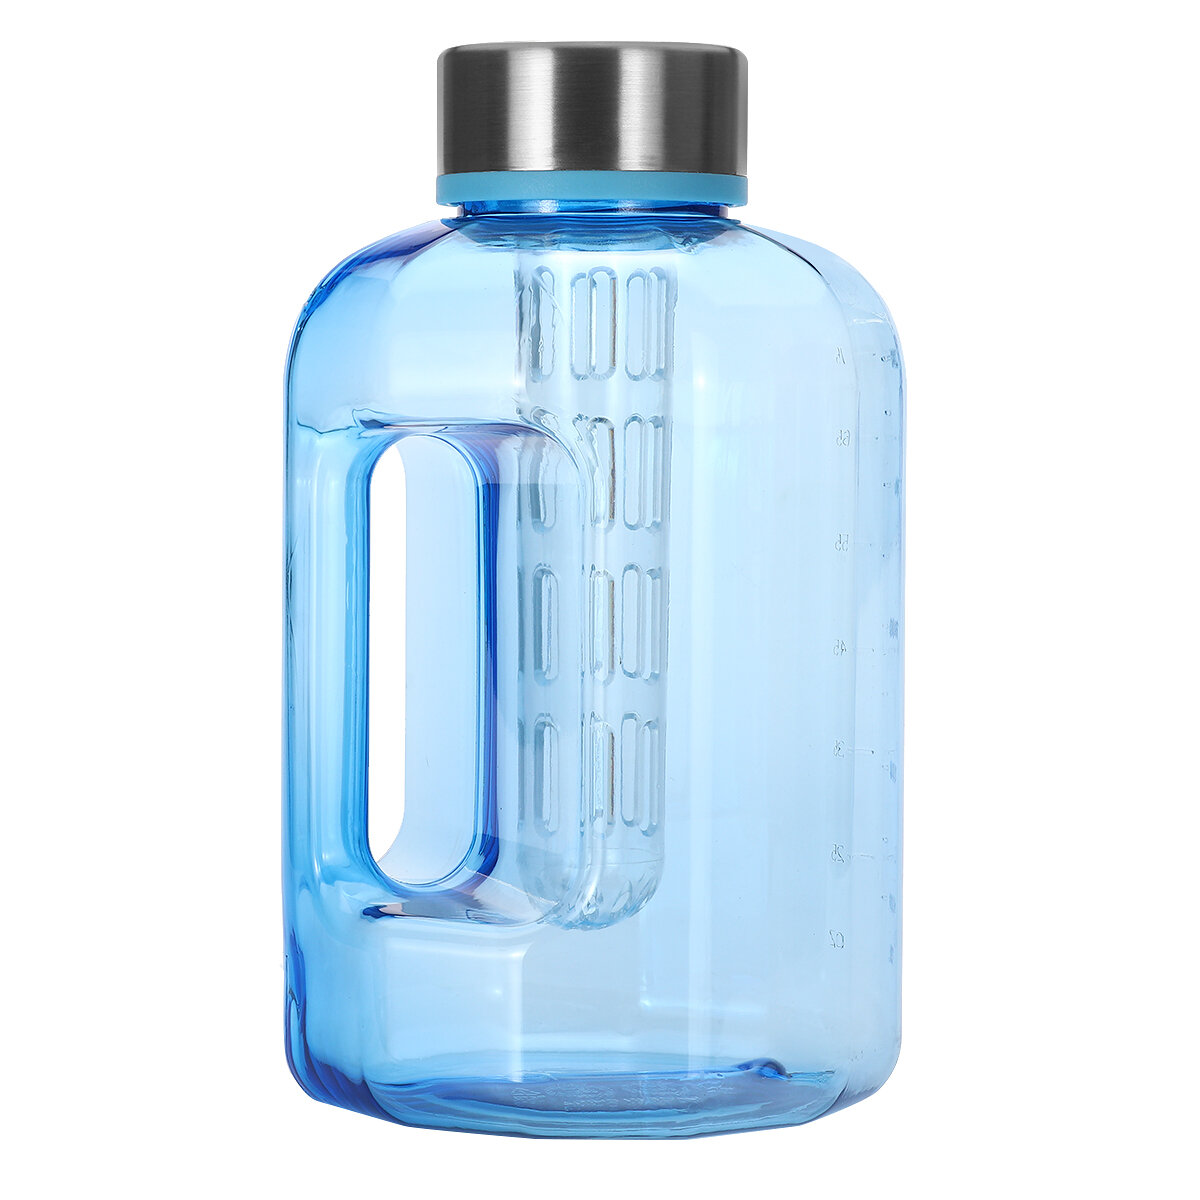 زجاجة ماء رياضية بسعة كبيرة 2.2 لتر / 84 أونصة بدون BPA مع غطاء للتدريب في الجيم والتنزه وركوب الدراجات.